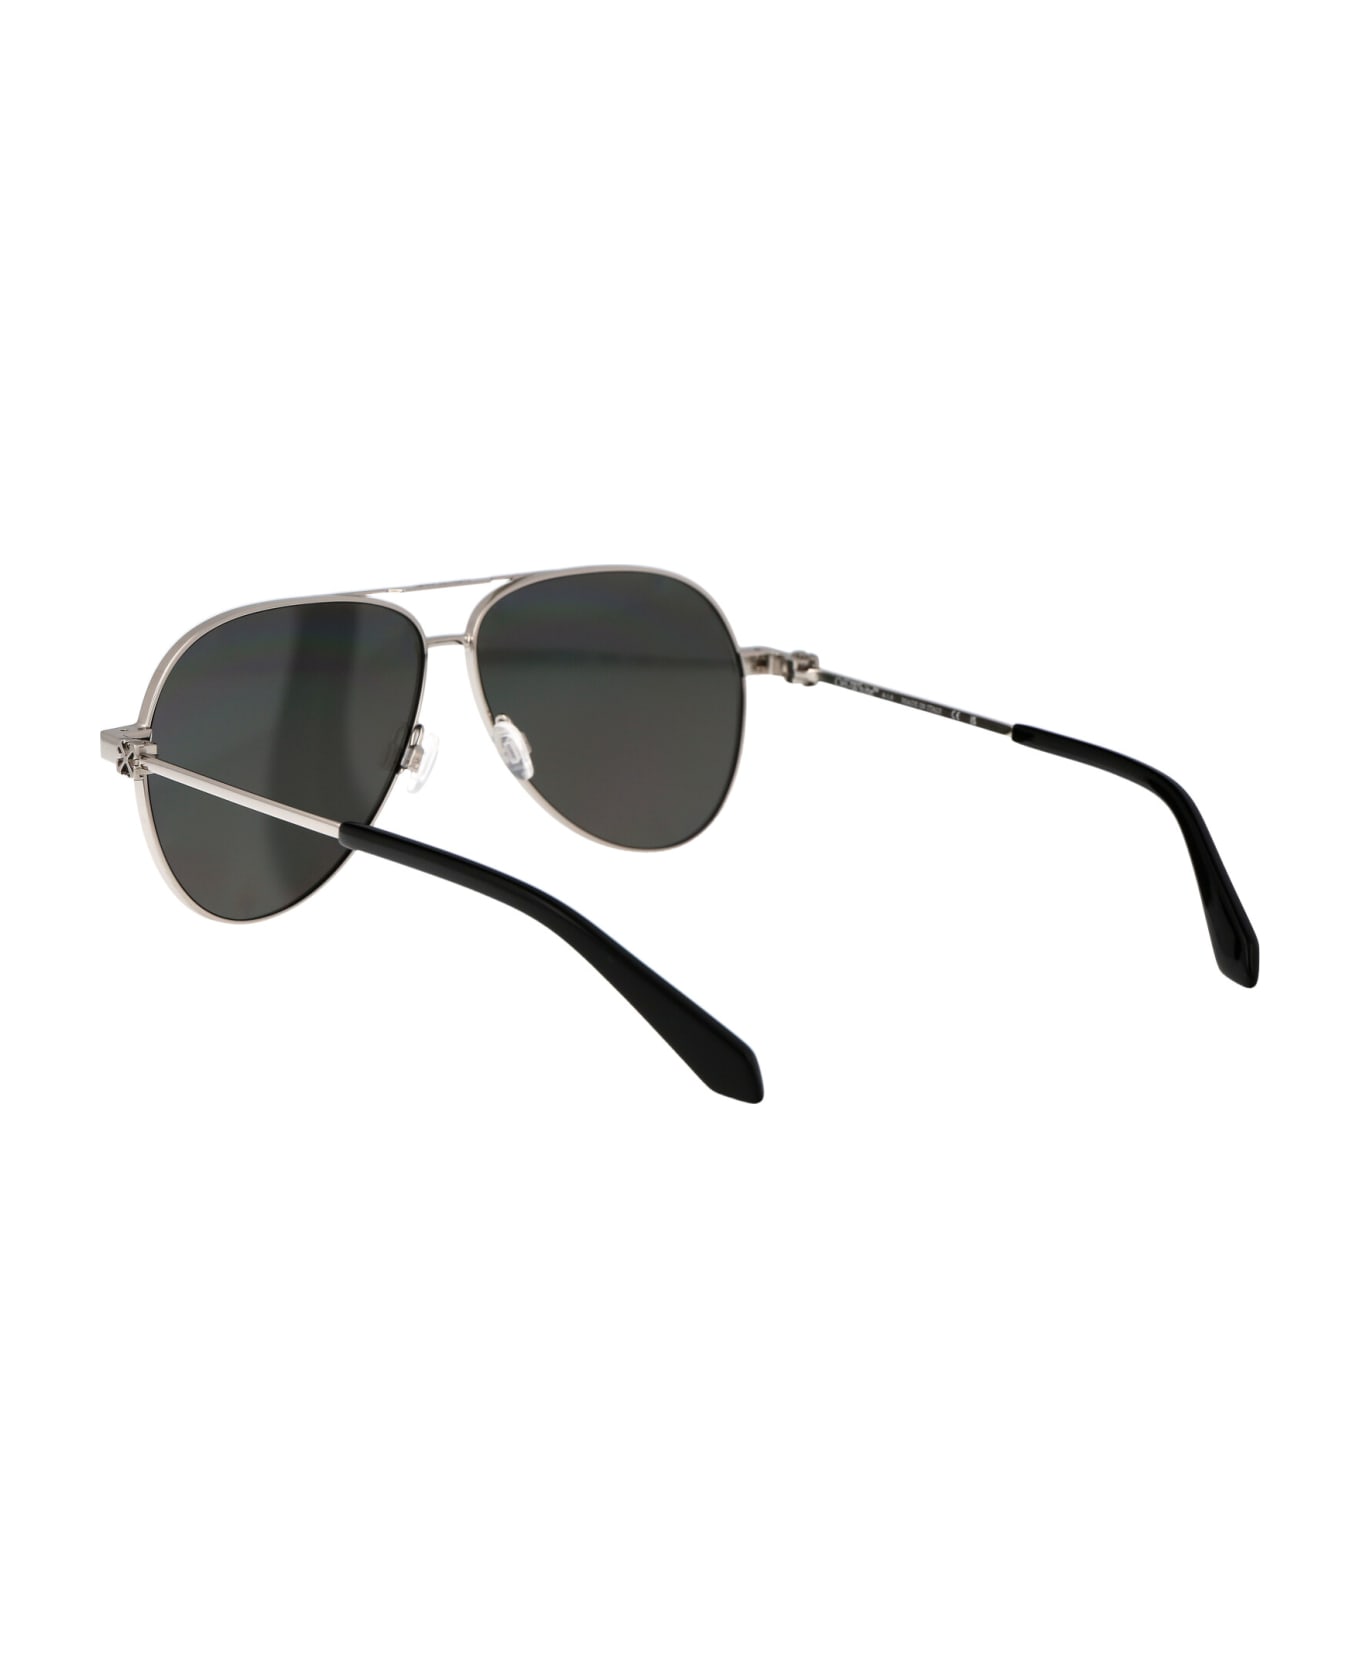 Off-White Ruston L Sunglasses - 7272 SILVER SILVER